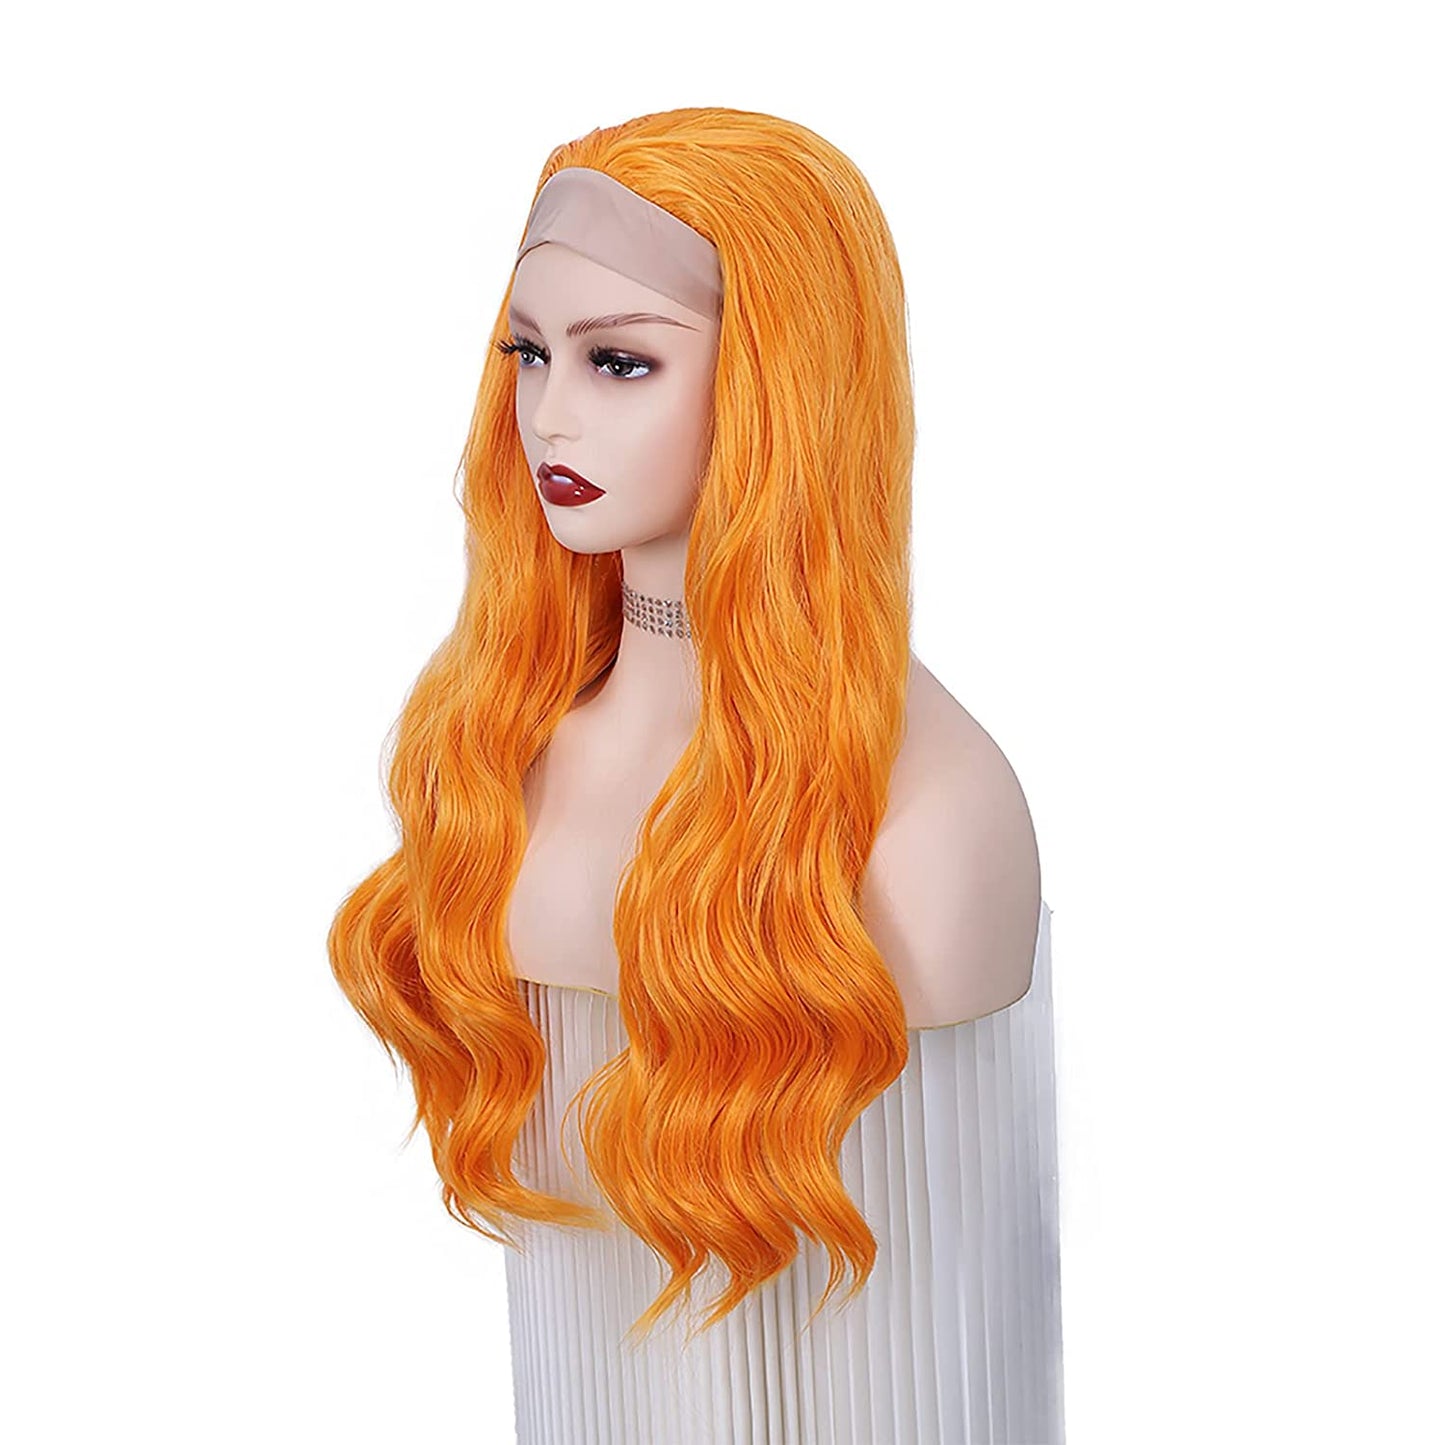  Orange Headband Wig Deep Wave HeadBand Wig Long wavy Wigs Long Curly Wavy Hair Wigs 